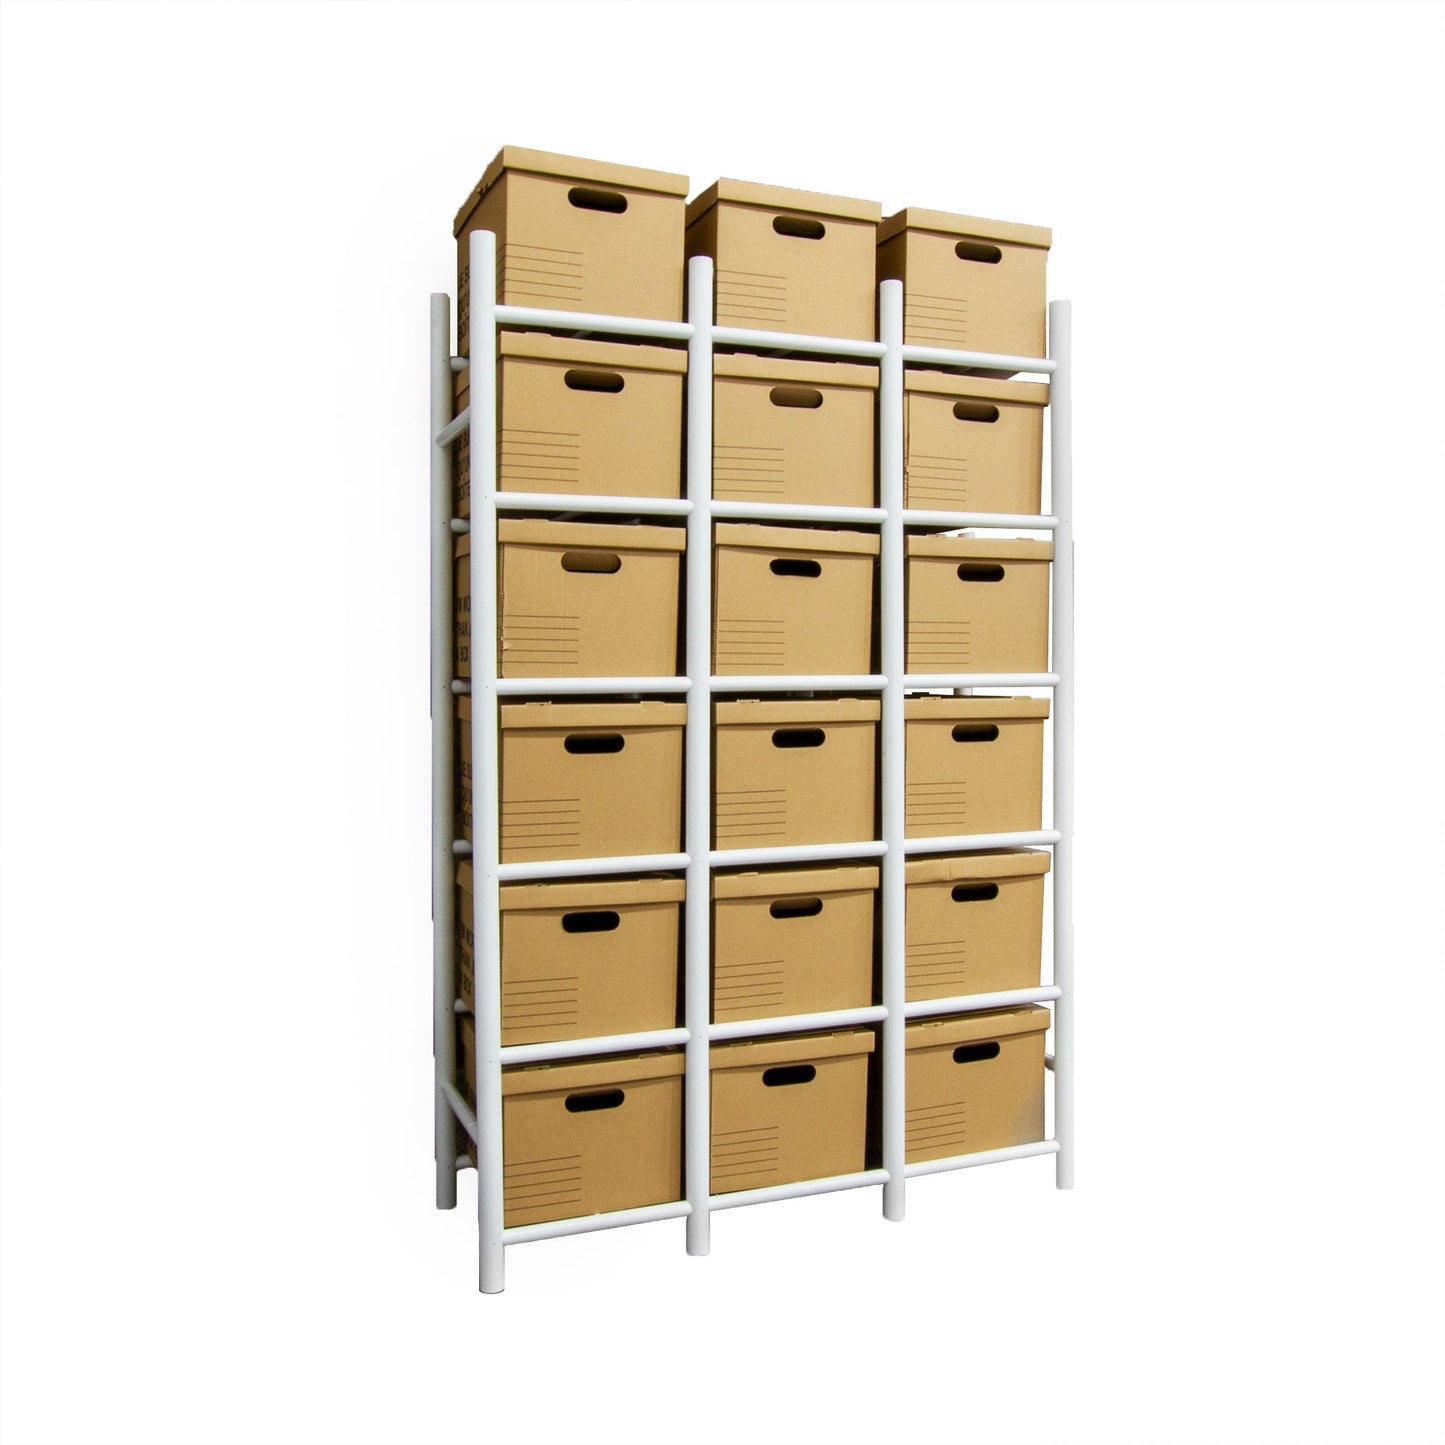 Bin Warehouse Rack - 18 Filebox